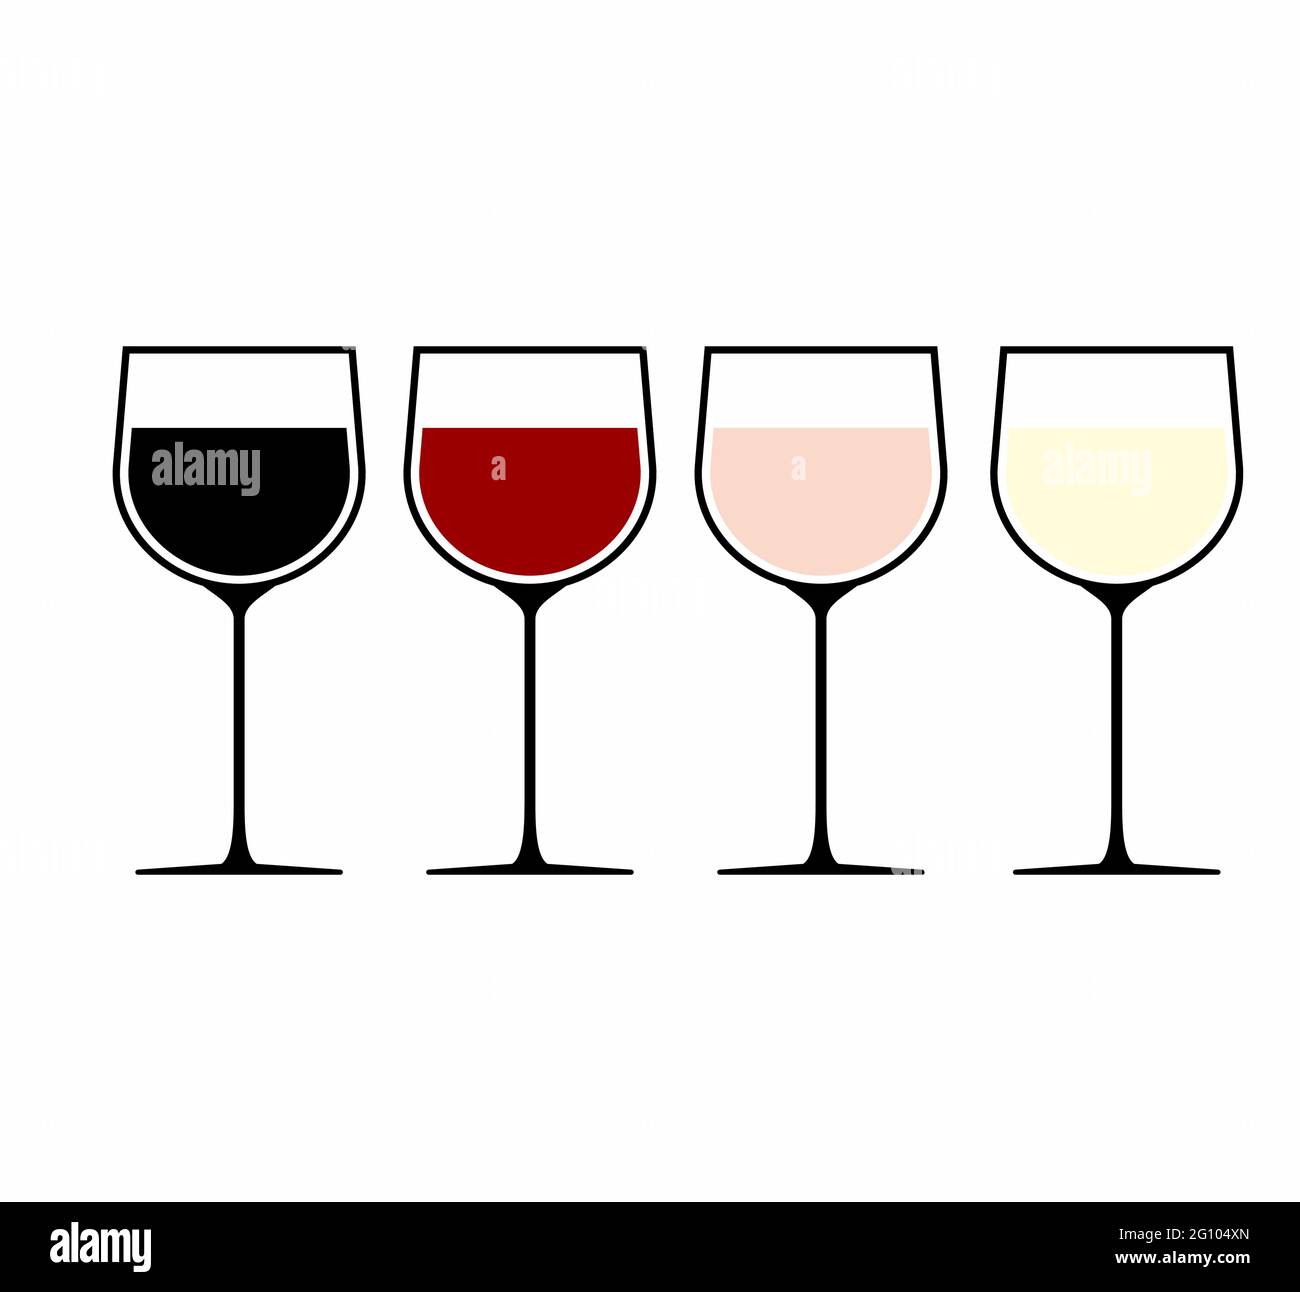 4 verschiedene Weine in Weingläsern, eine Farbe pro Glas Weinvektor Logo, Symbol oder Schild. Weinglas mit Wein zur Verkostung, Weiß-, Rot- und Roséwein. Als Stock Vektor